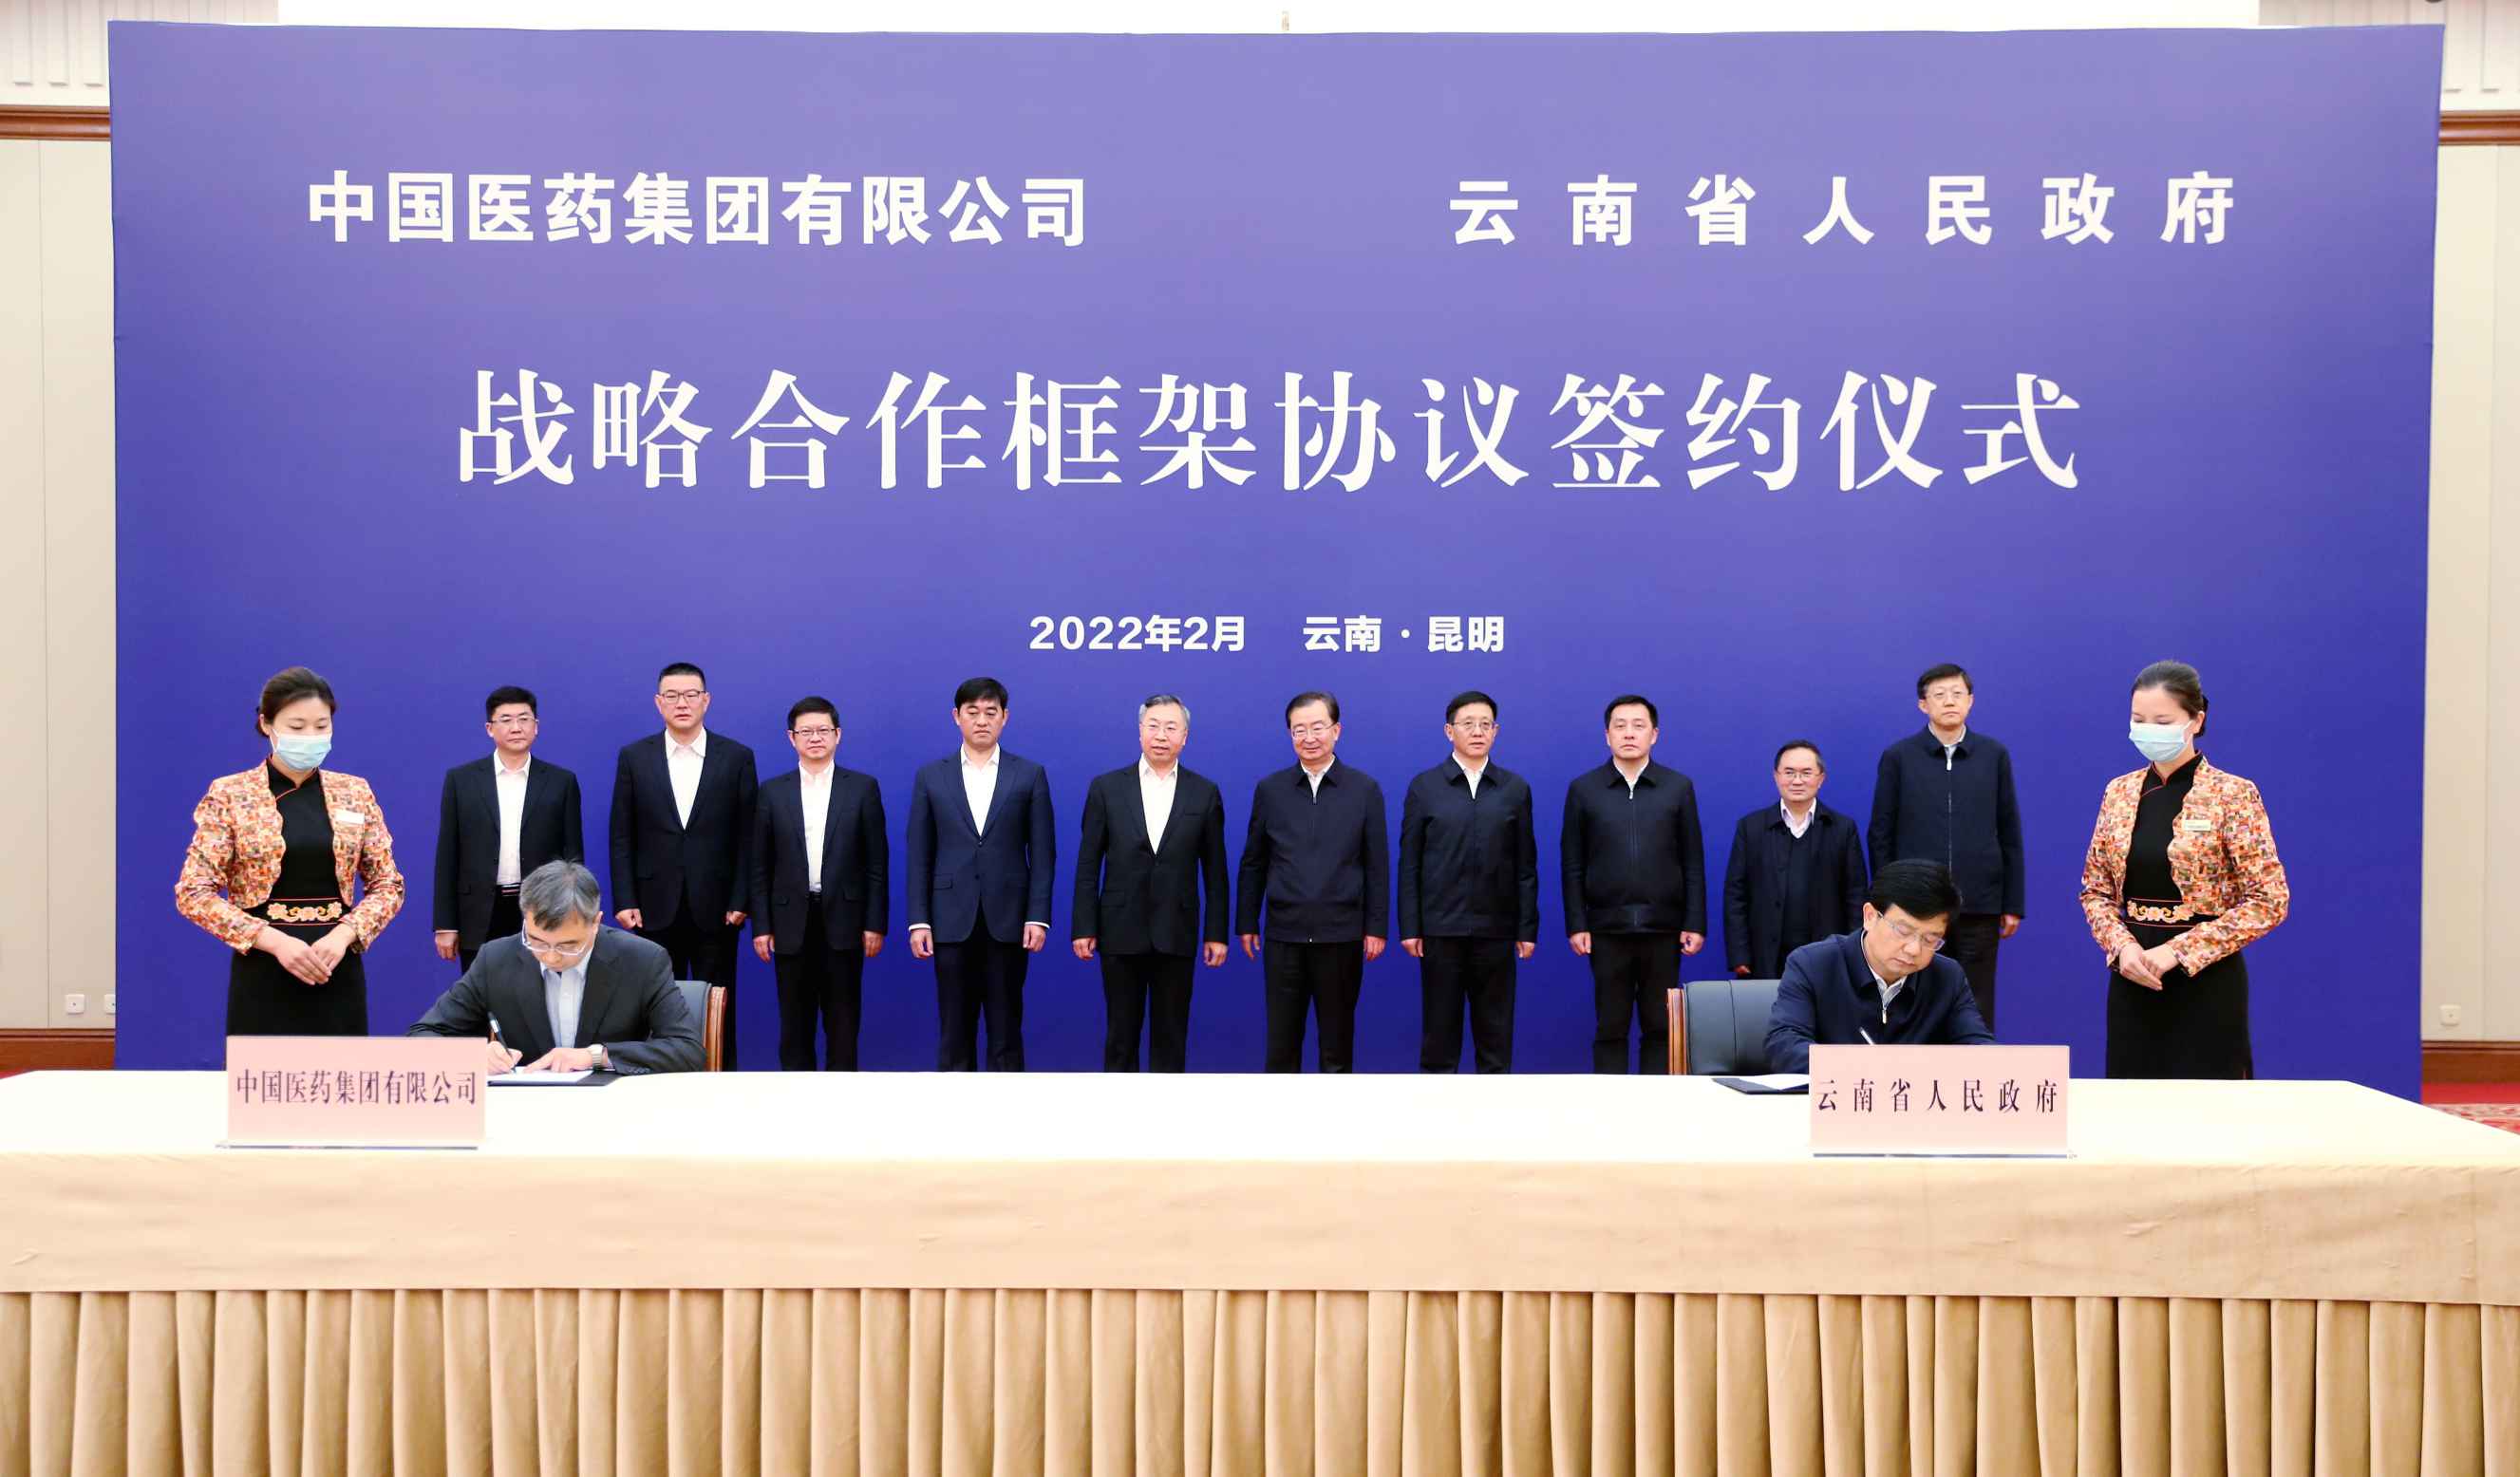 2022年2月27日，九游会俱乐部与云南省人民政府签署战略合作框架协议